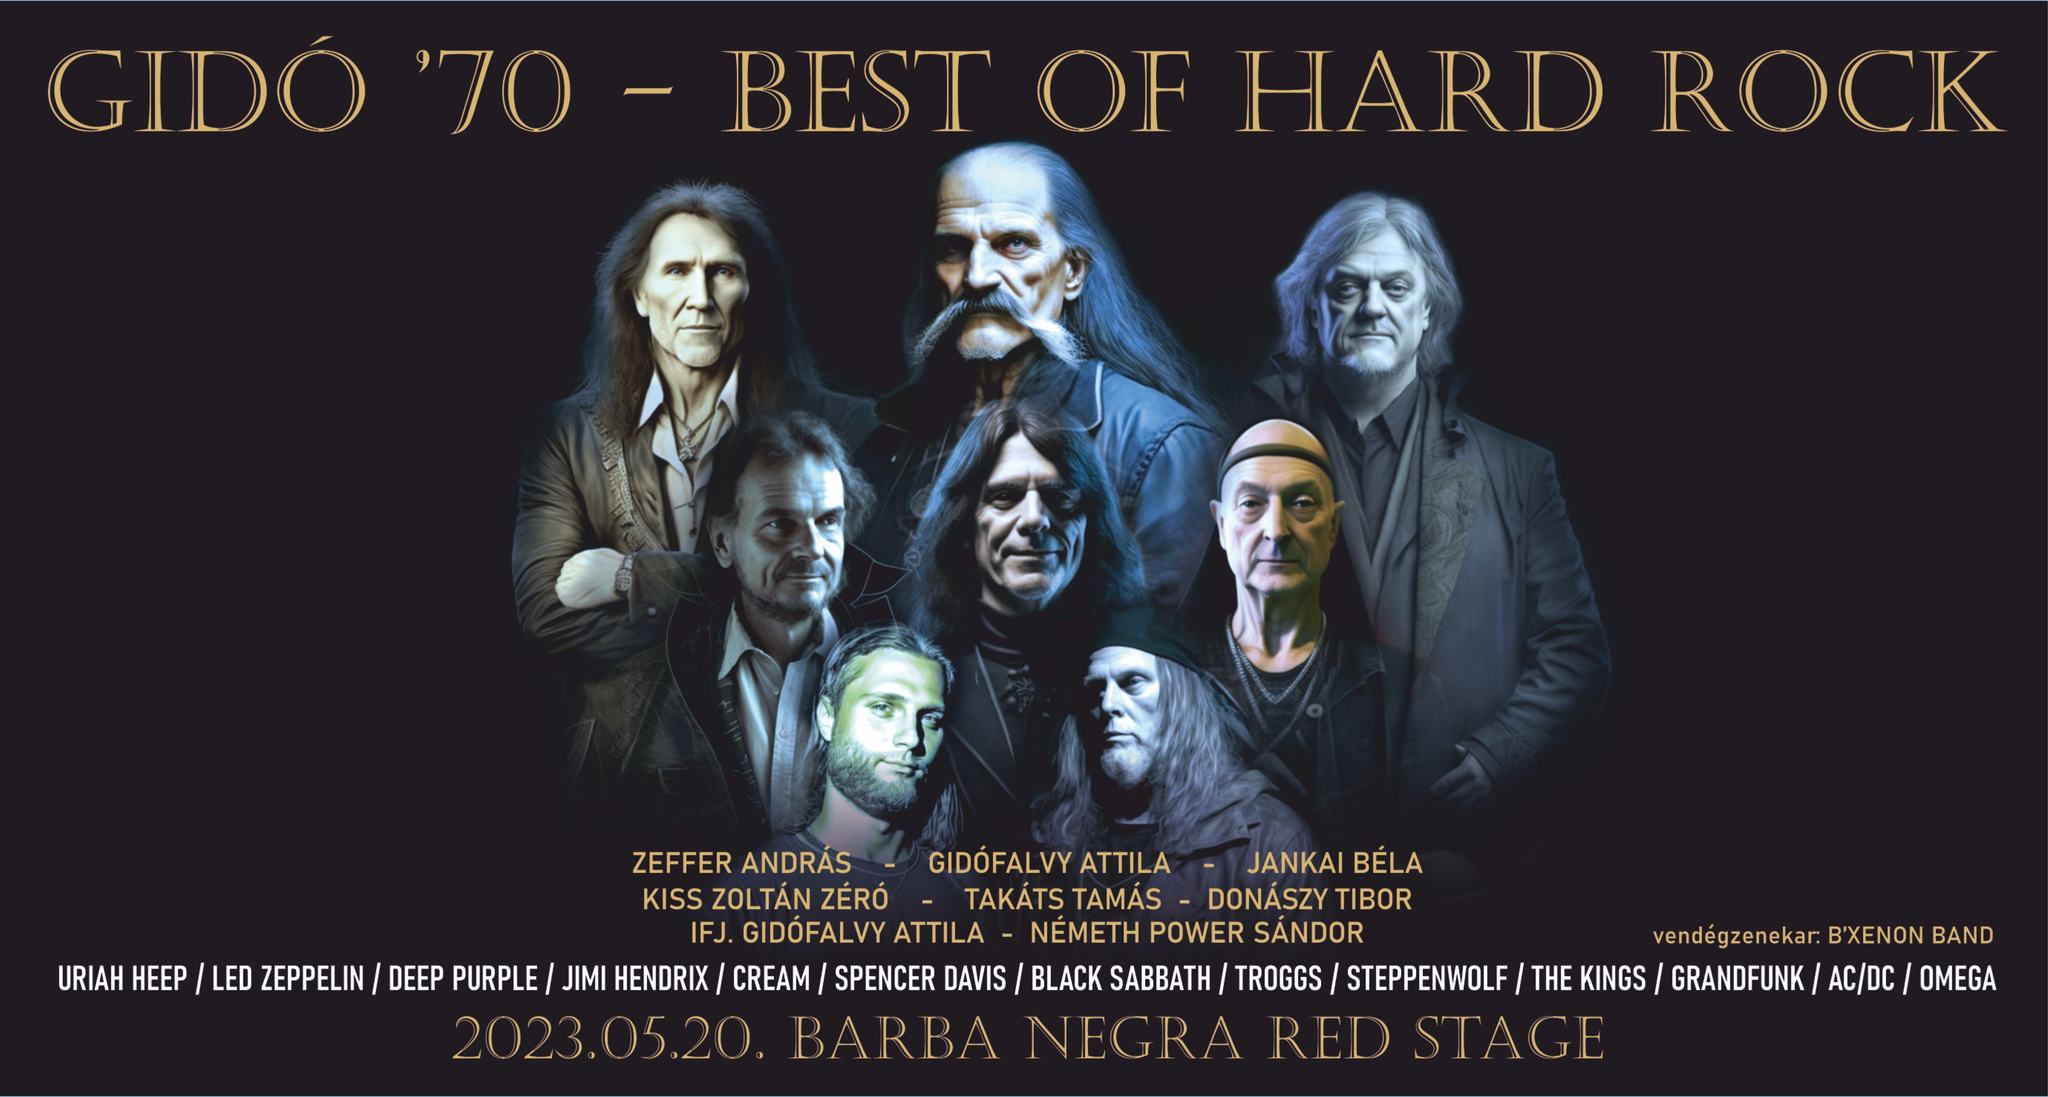 Gidó ‘70 - Időutazás a rockzene klasszikusaival! Best of Hard Rock koncert május 20-án a Barba Negrában! 